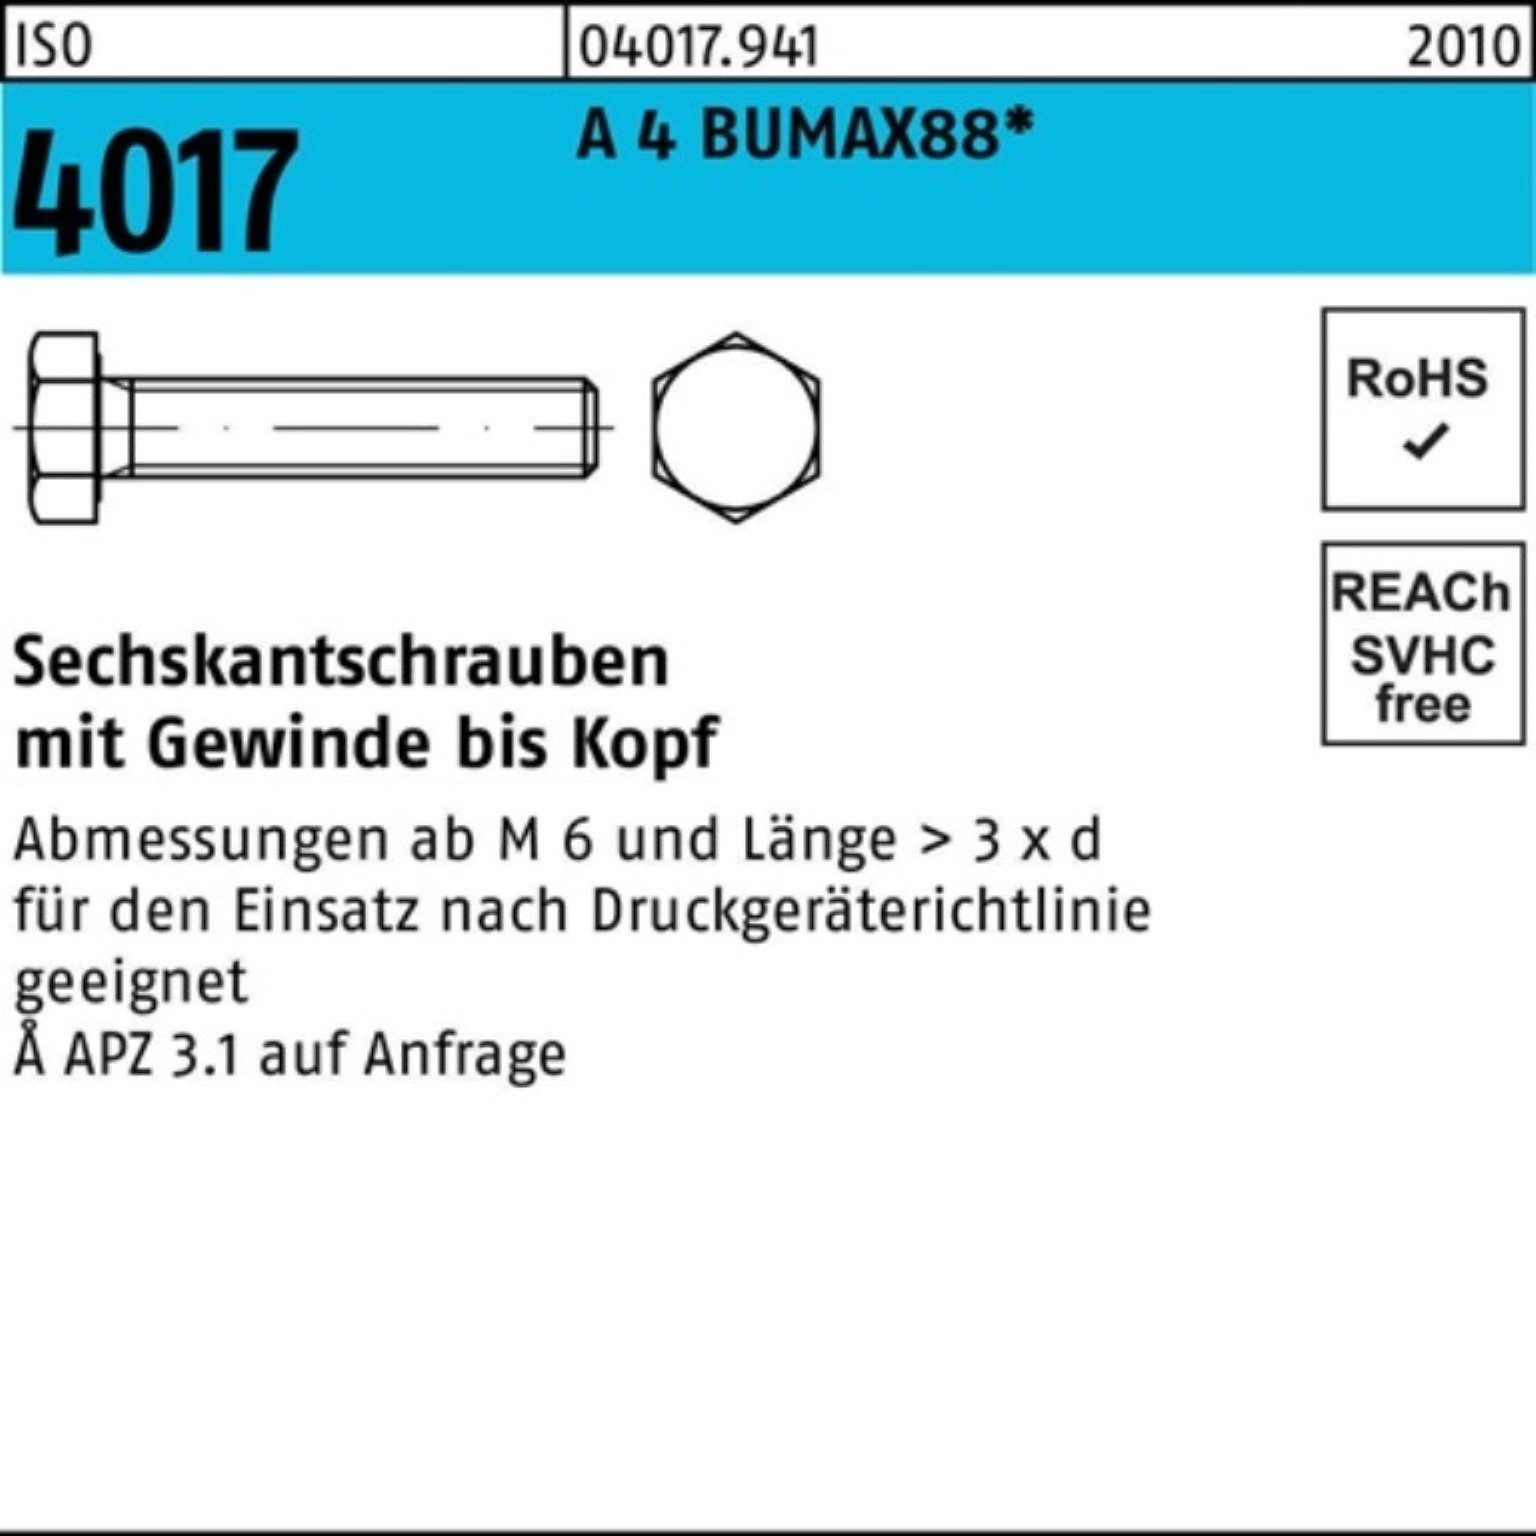 Bufab Sechskantschraube 100er Pack Sechskantschraube ISO 4017 VG M5x 25 A 4 BUMAX88 100 Stück